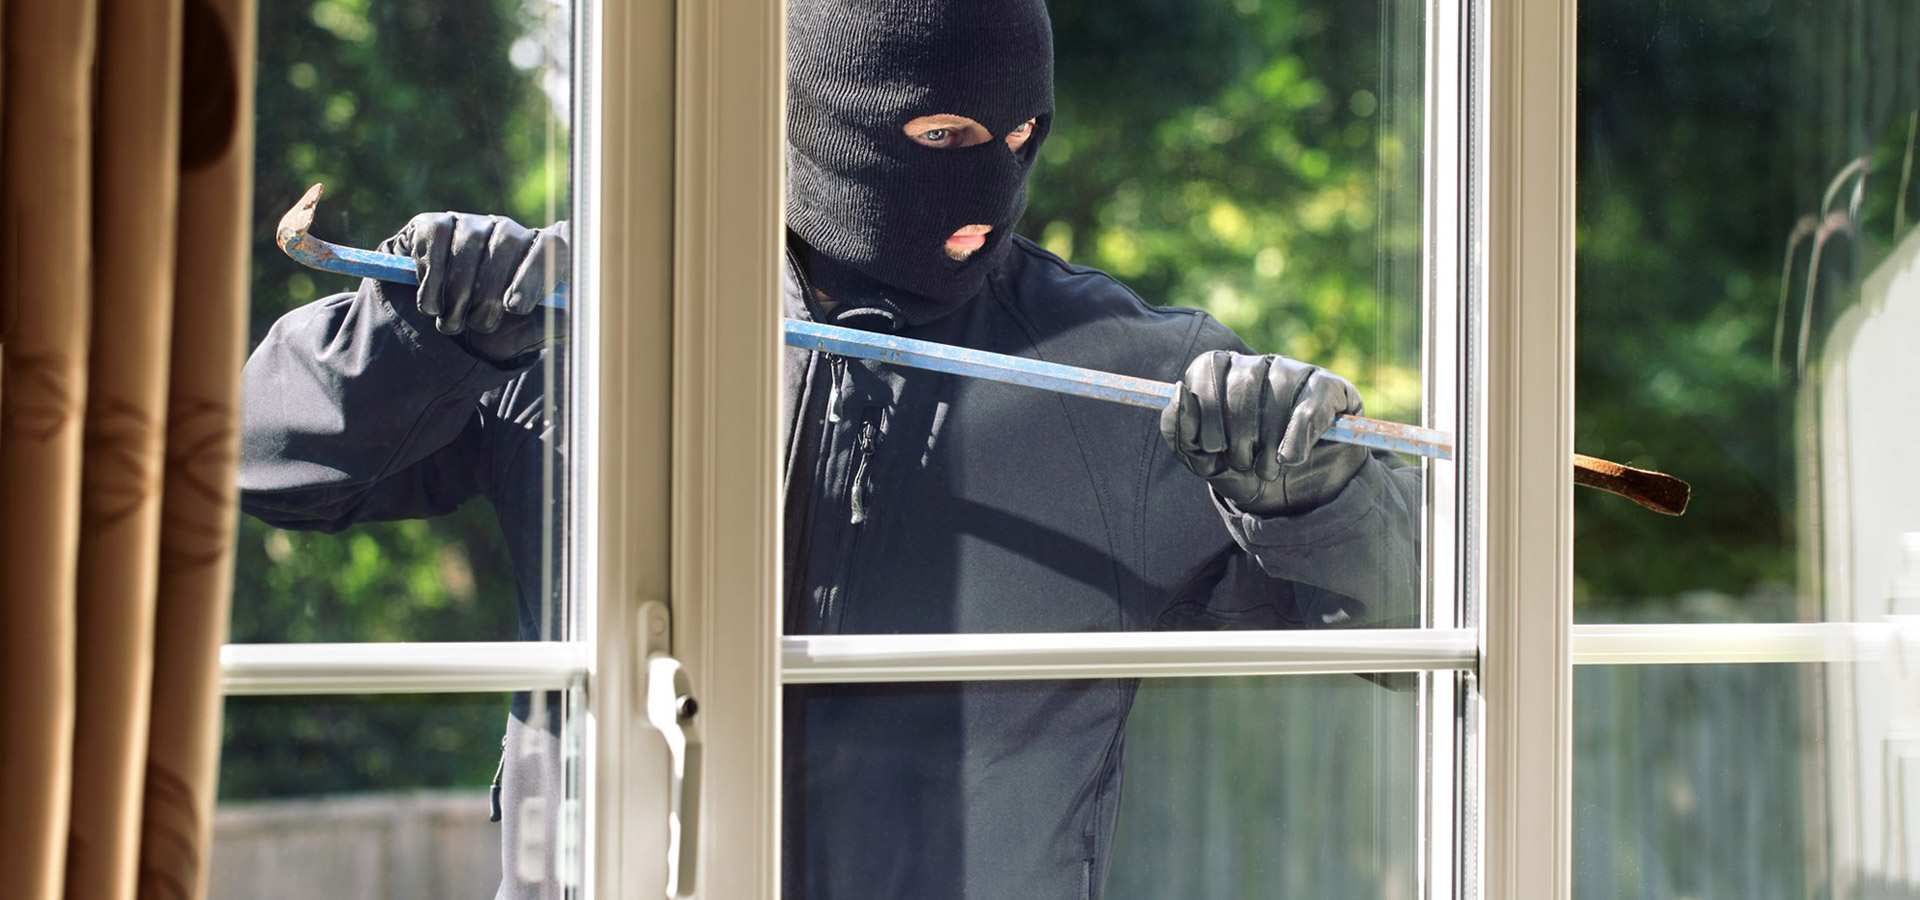 Противовзломная фурнитура - защита окна от взлома